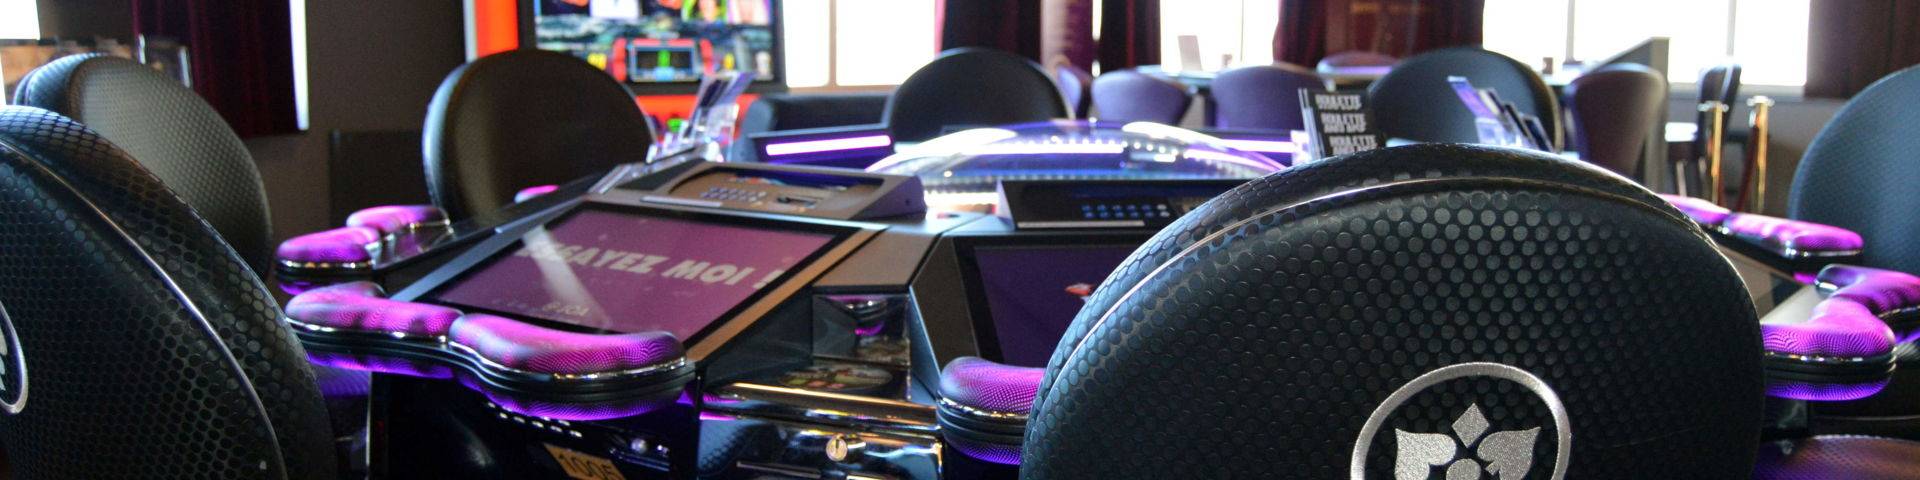 Roulette électronique casino St-Pair